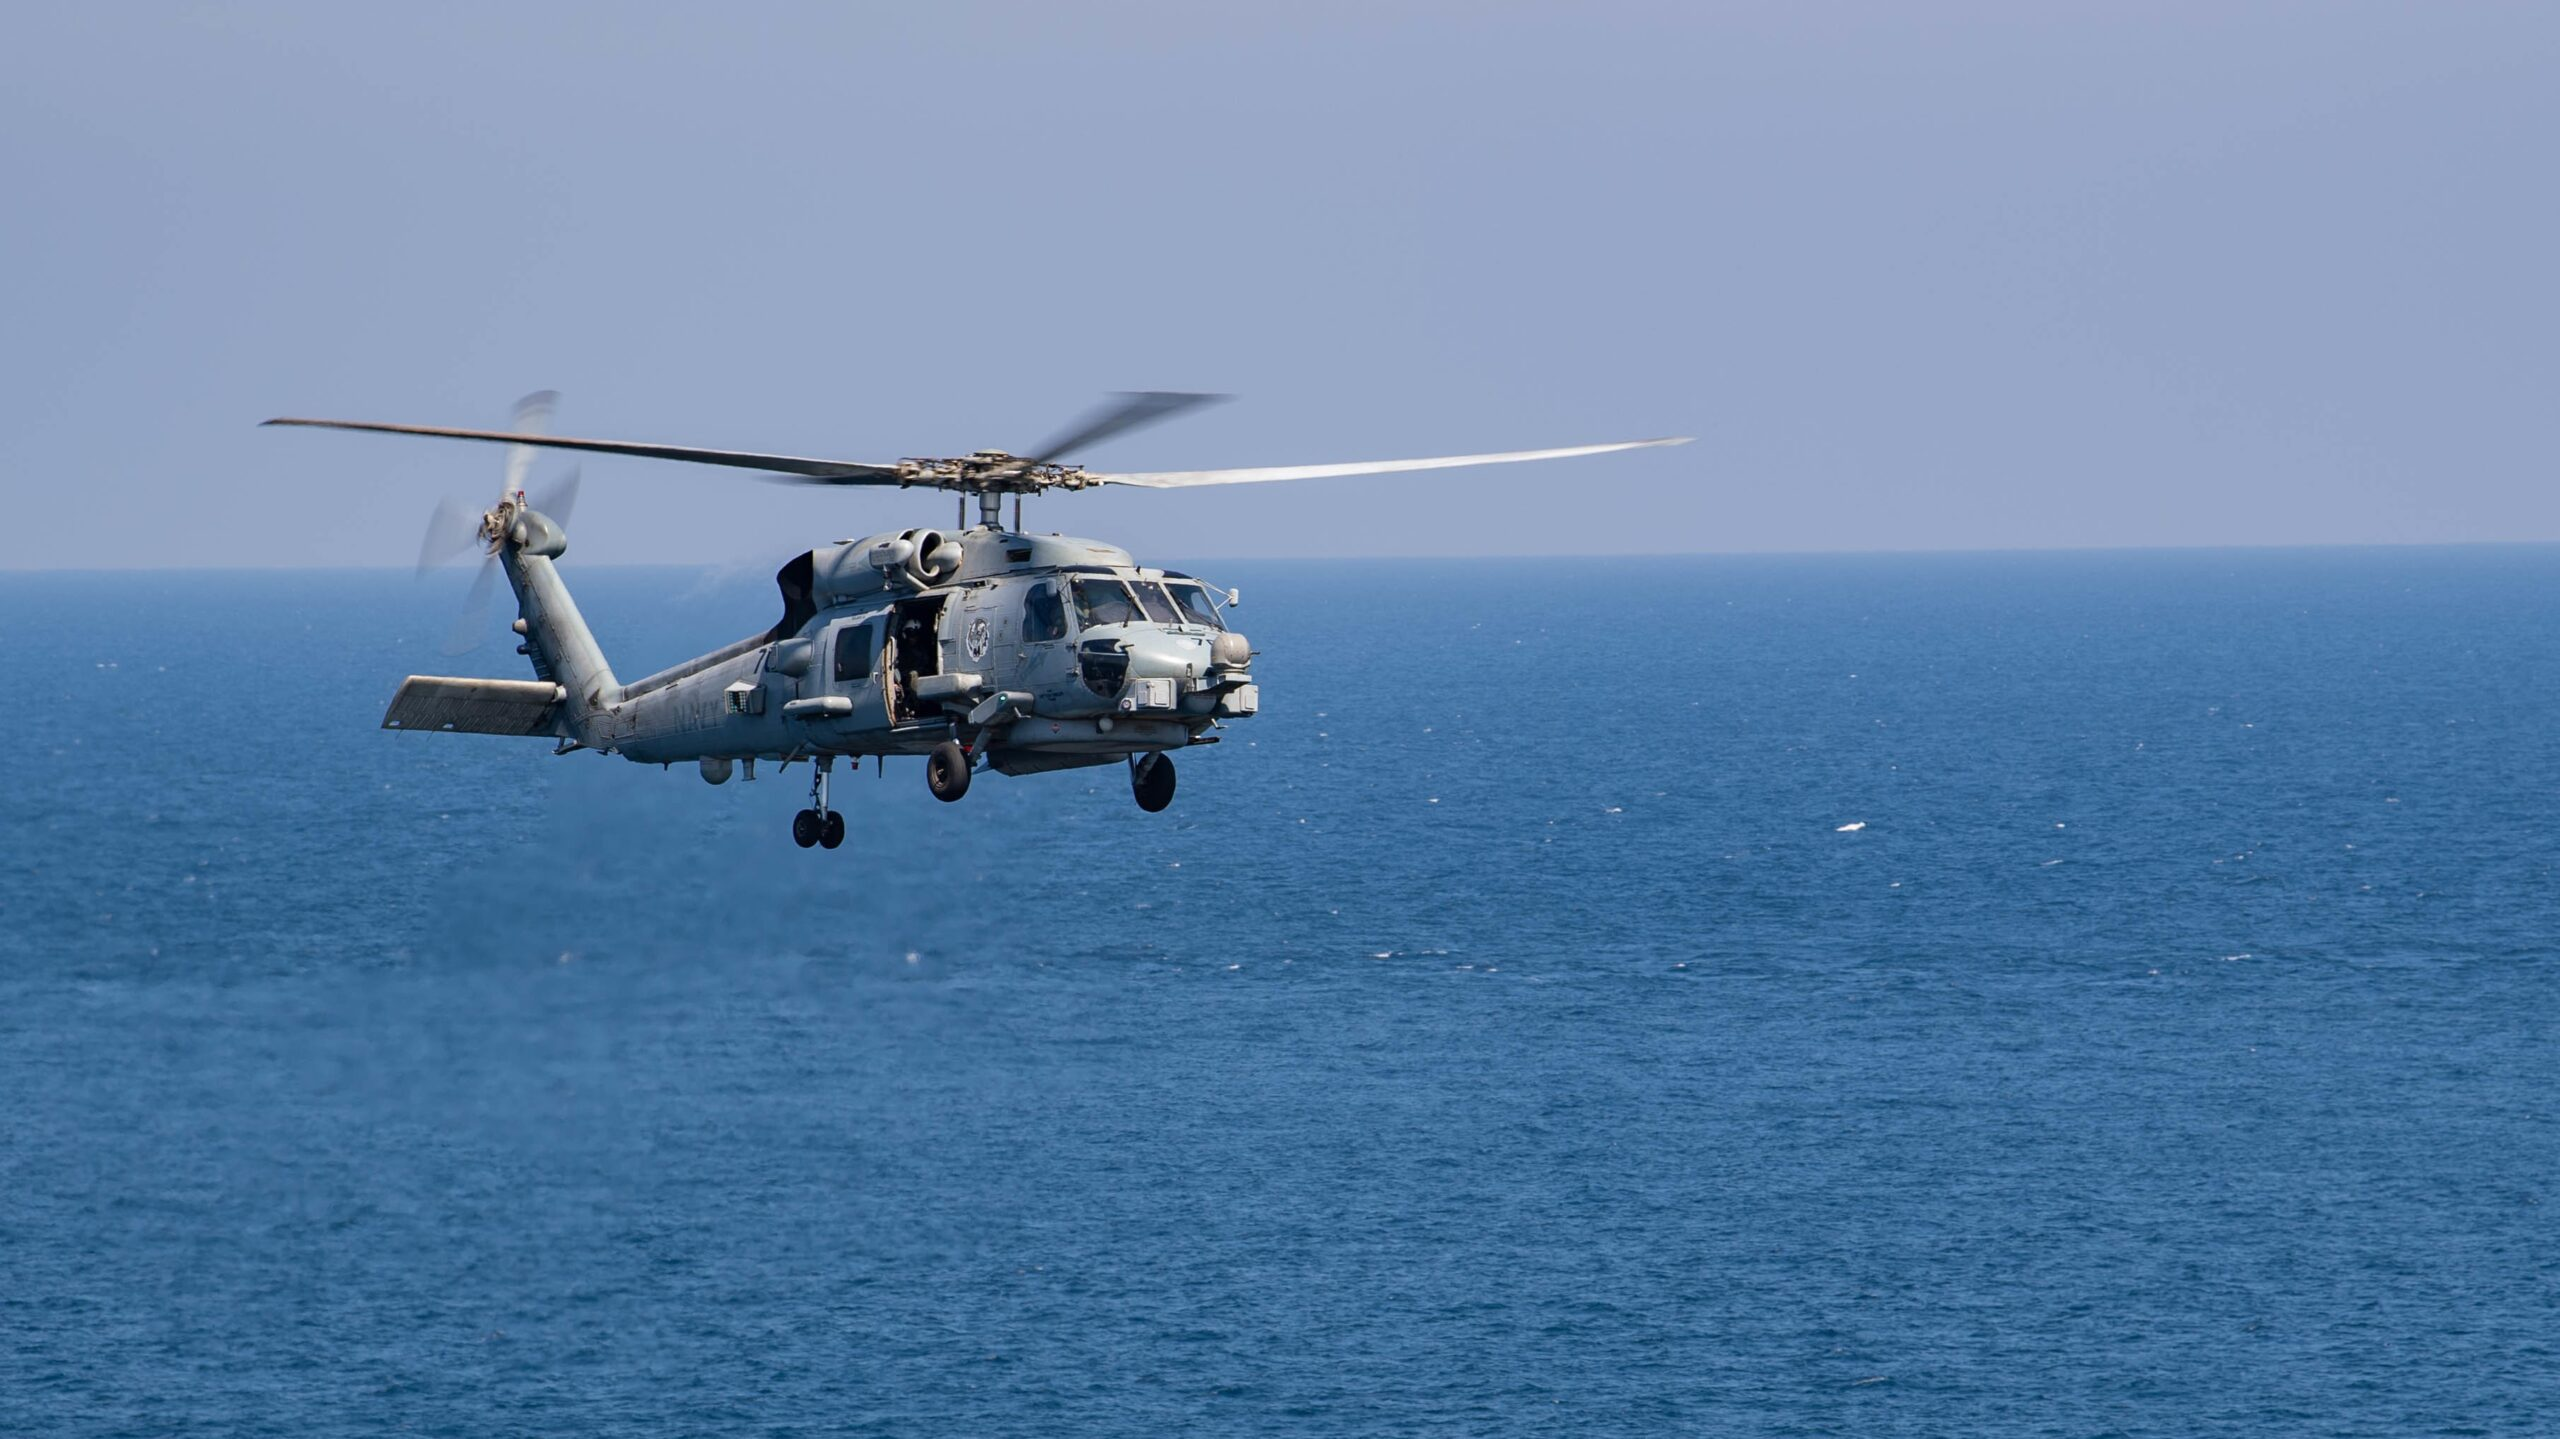 Οι ΗΠΑ ενέκριναν την πώληση έξι ελικοπτέρων ναυτικής συνεργασίας MH-60R Sea Hawk στη Νορβηγία